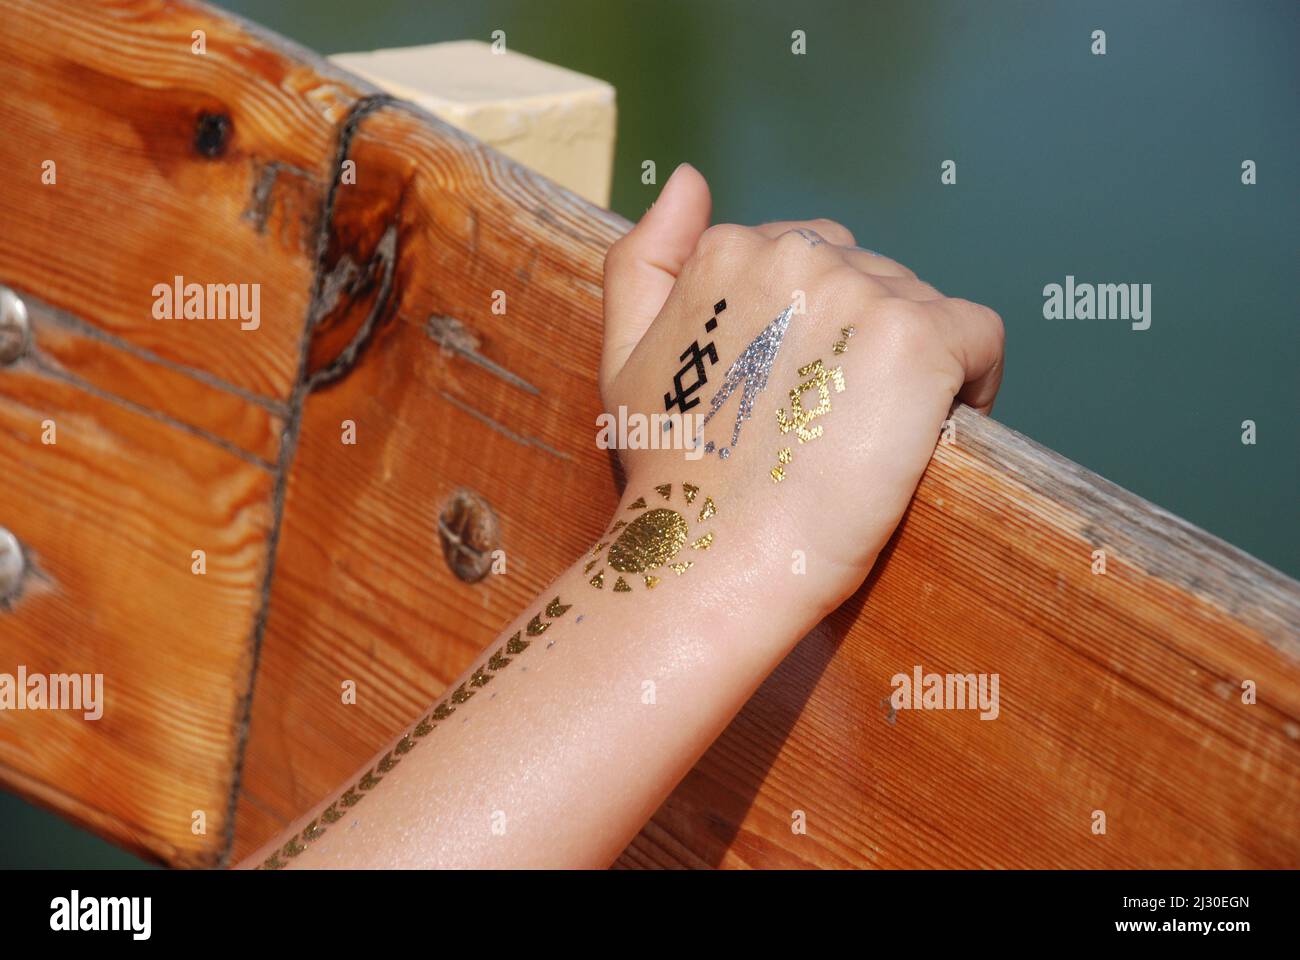 Tatuaje temporal dorado en la mano de un niño Foto de stock